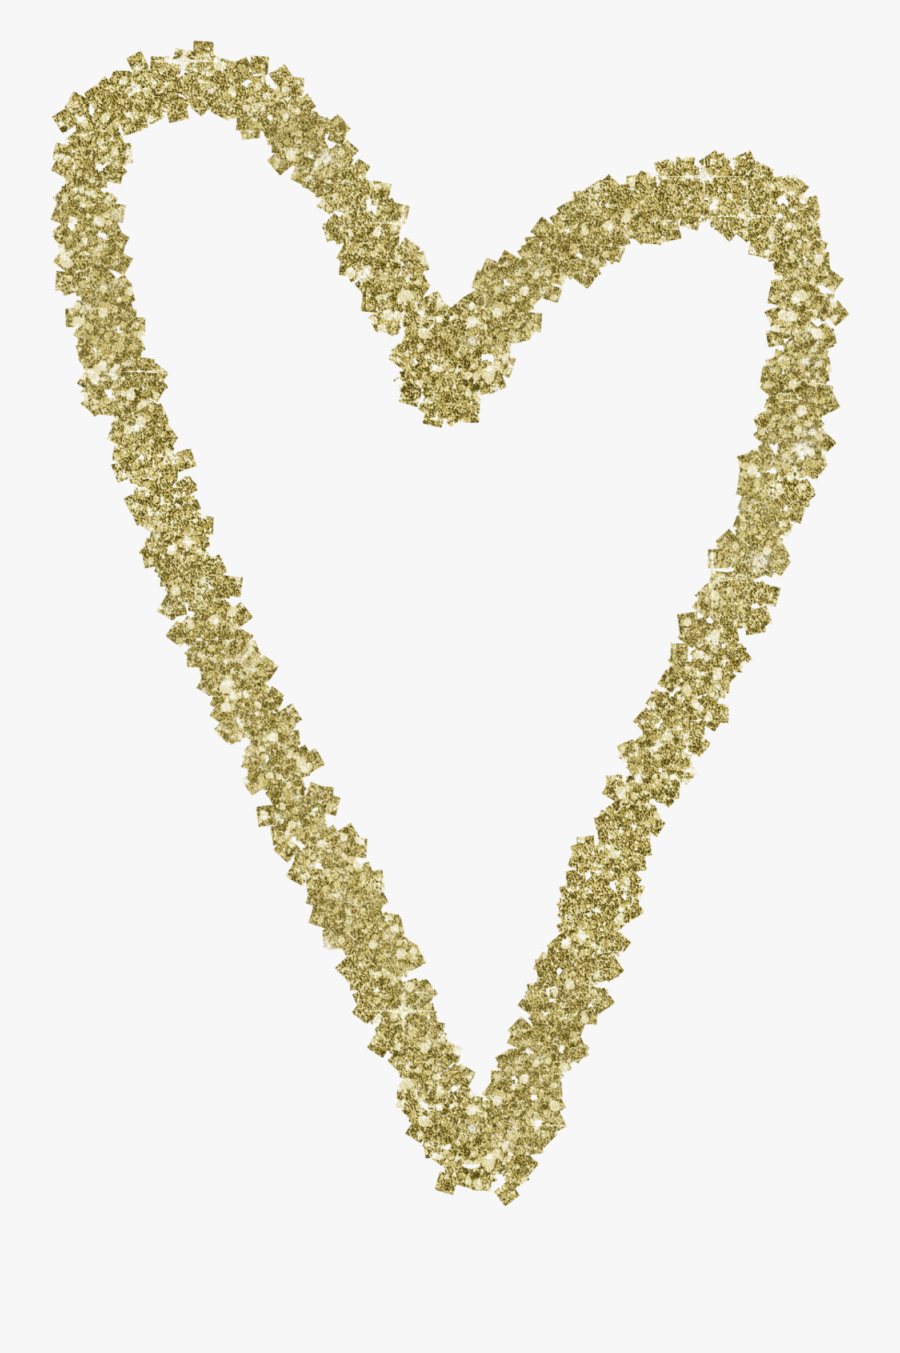 Gold Glitter Heart - Gold Glitter Heart Png, Transparent Clipart